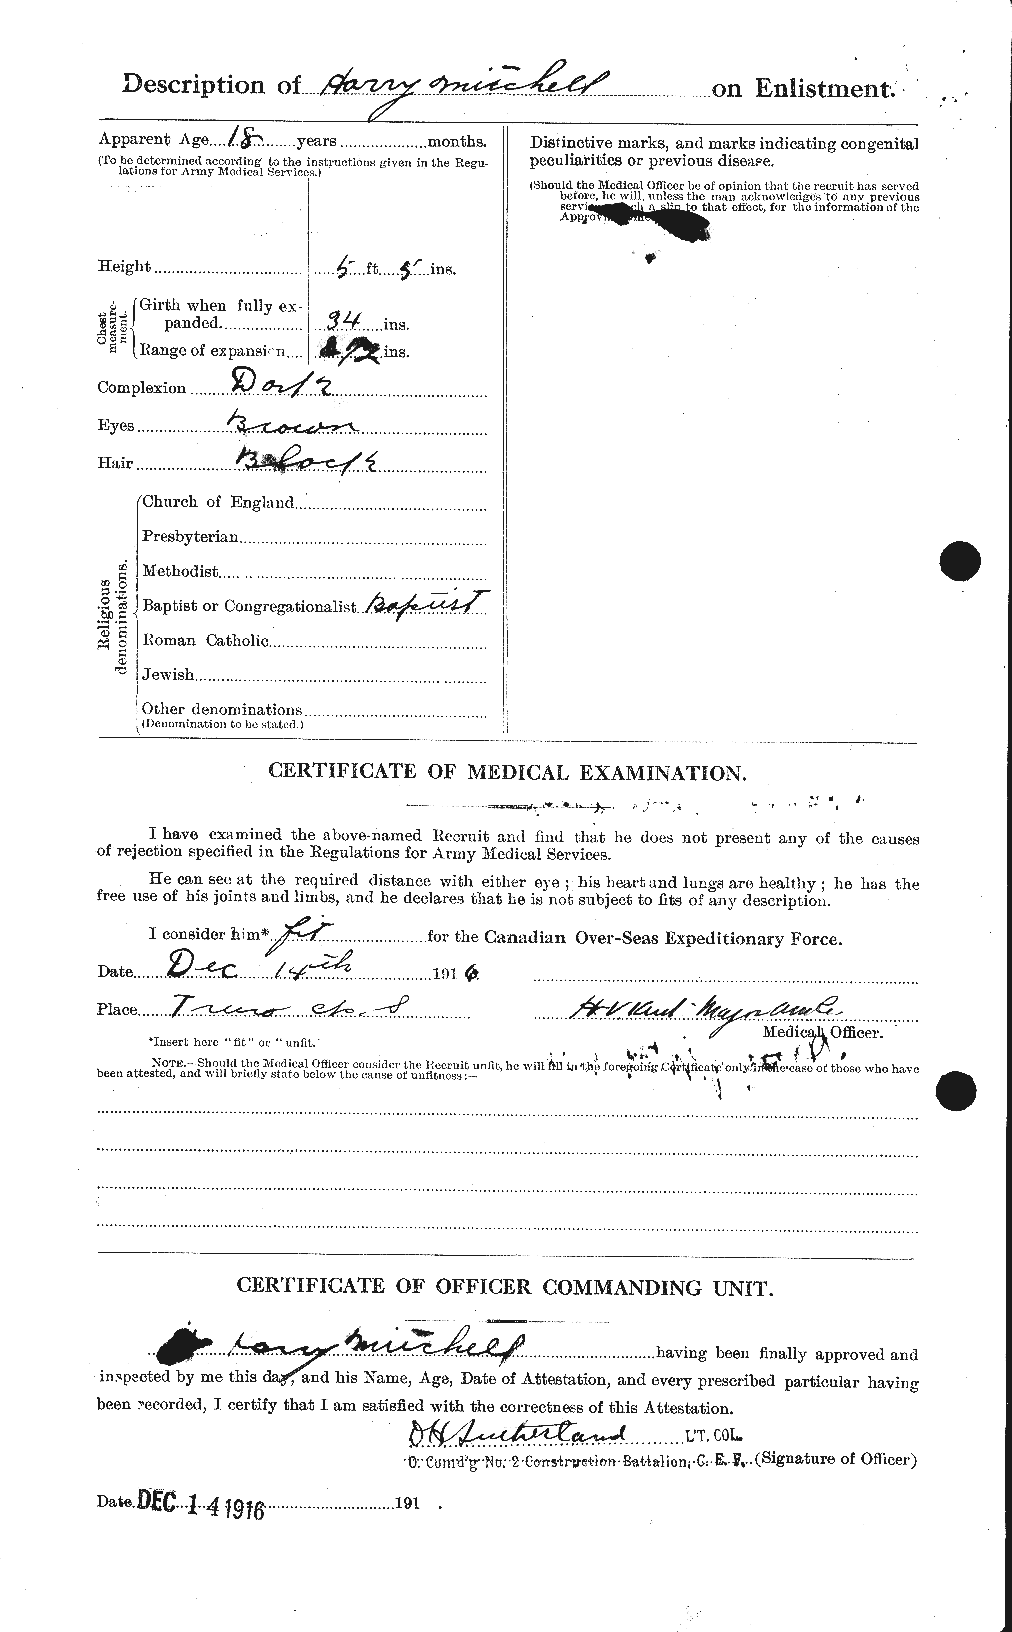 Dossiers du Personnel de la Première Guerre mondiale - CEC 497913b